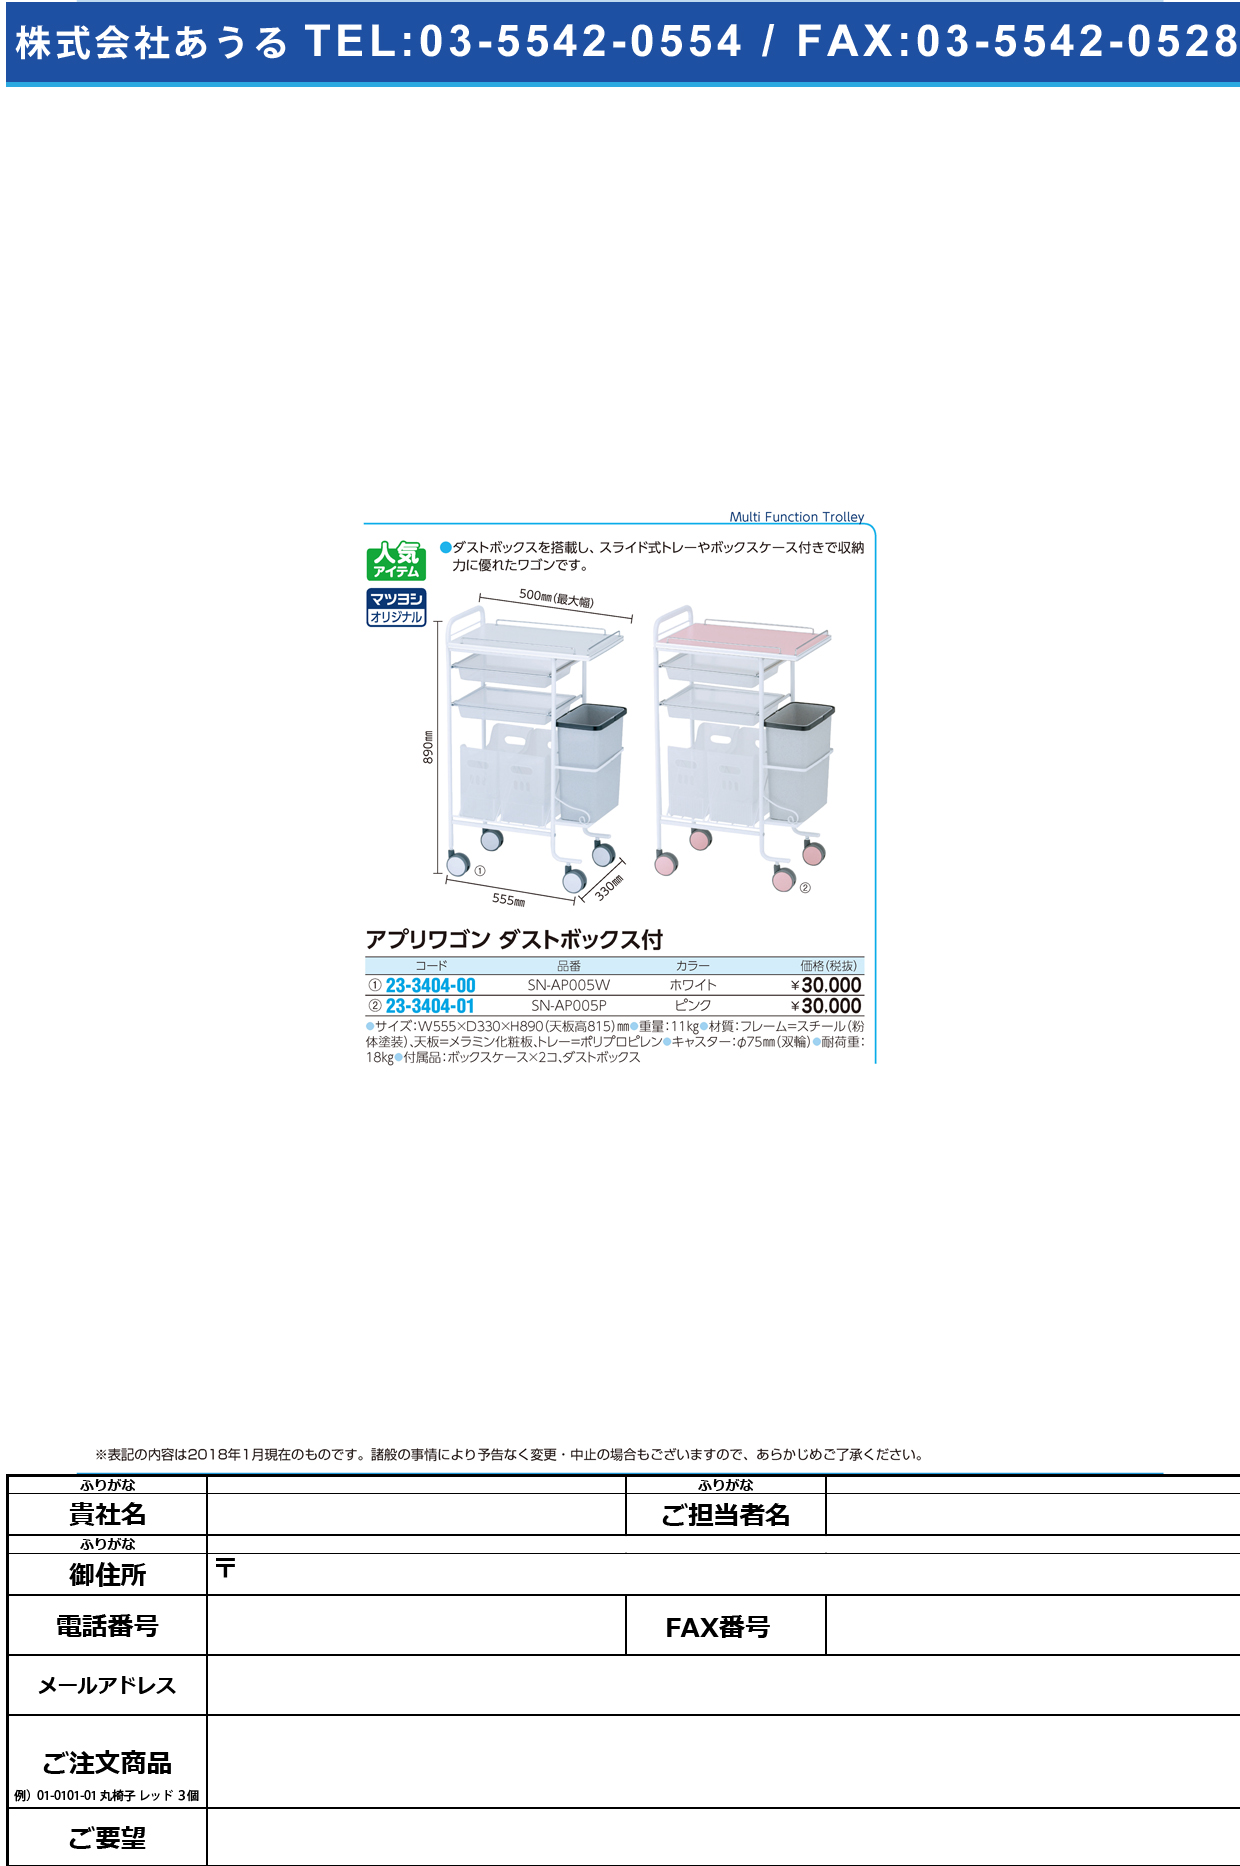 (23-3404-01)アプリワゴン（ダストボックス付） SN-AP005P(ﾋﾟﾝｸ) ｱﾌﾟﾘﾜｺﾞﾝﾀﾞｽﾄﾎﾞｯｸｽﾂｷ【1台単位】【2019年カタログ商品】